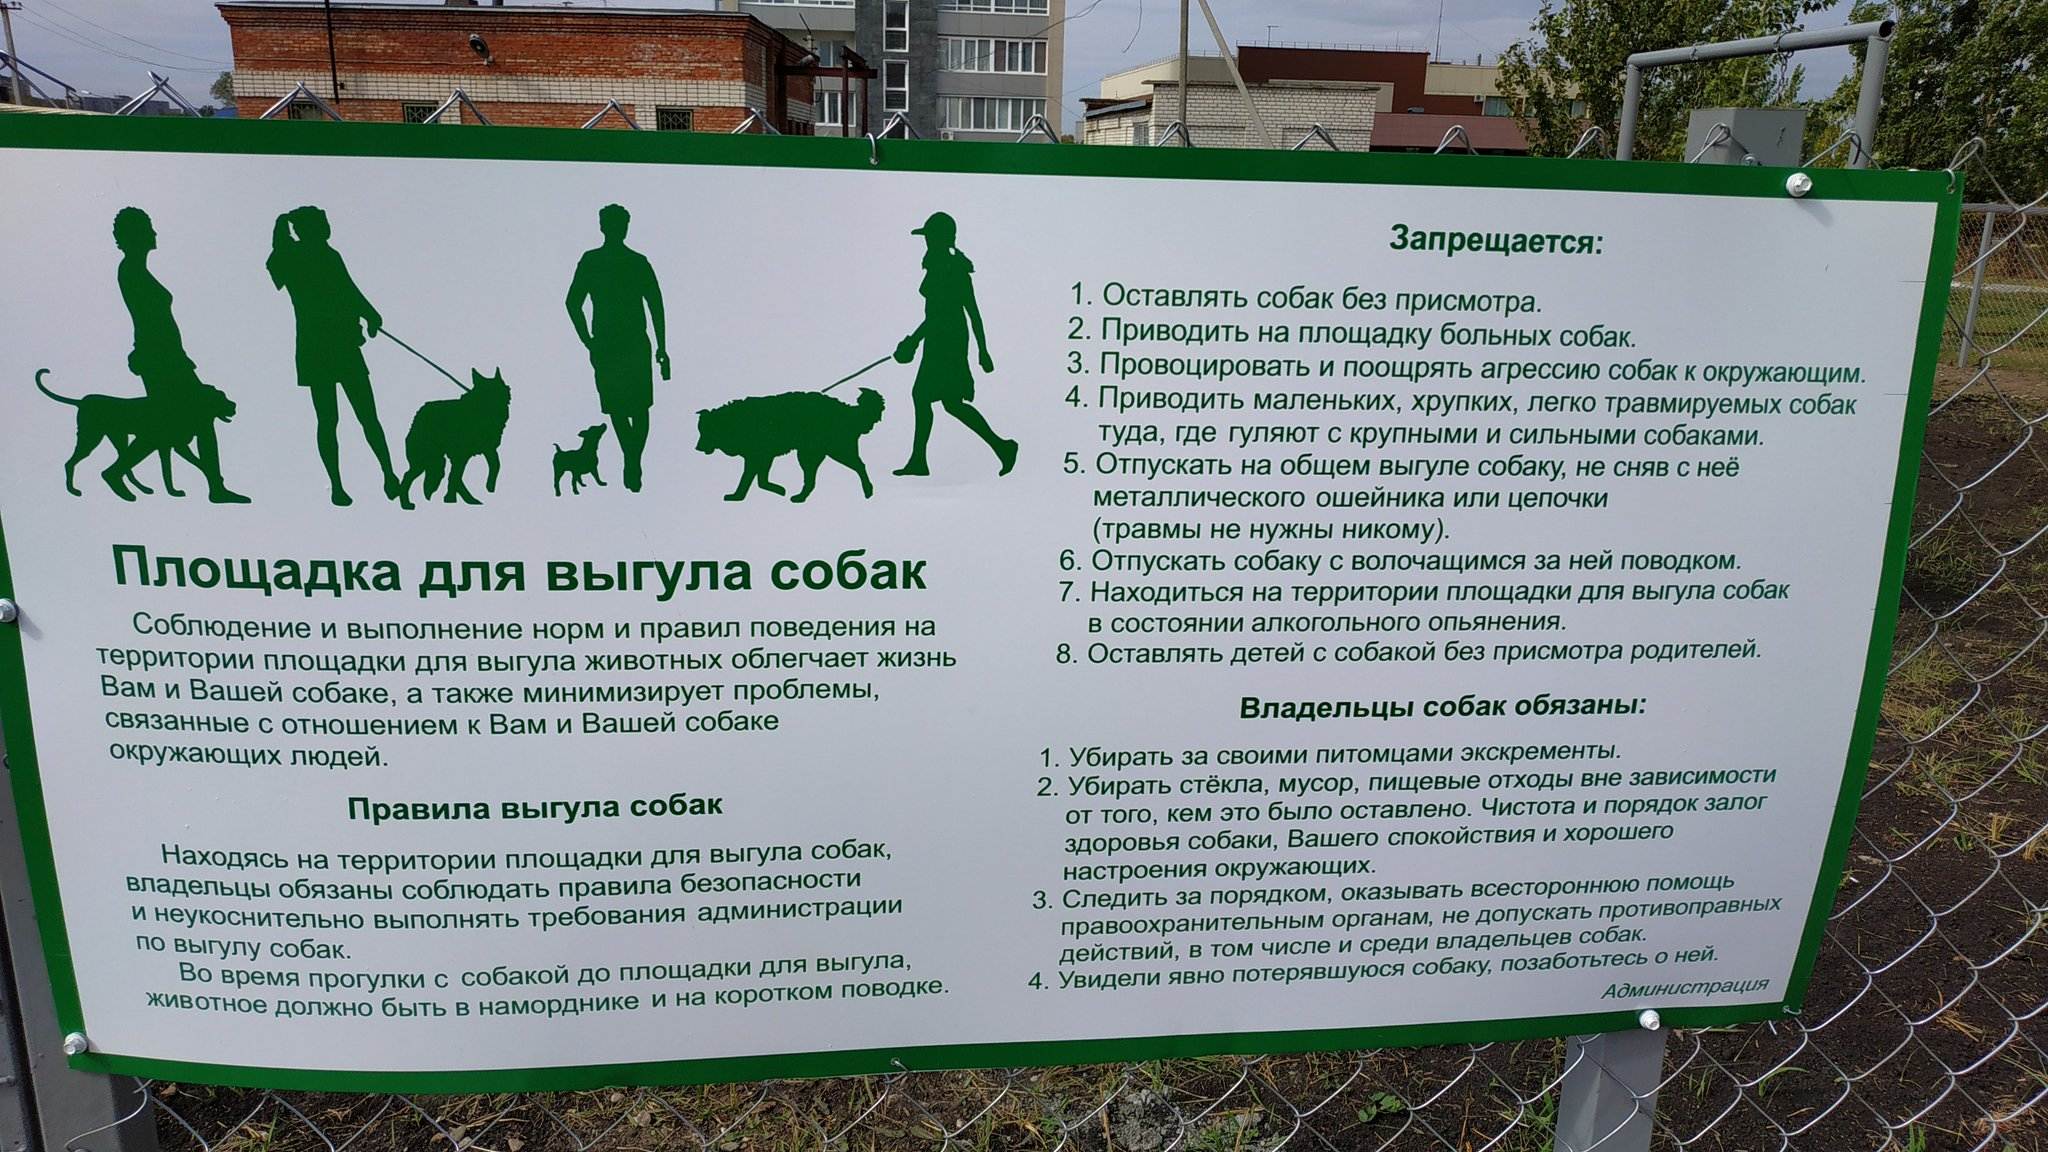 Правила выгула собак: закон рф, штрафы, комментарии